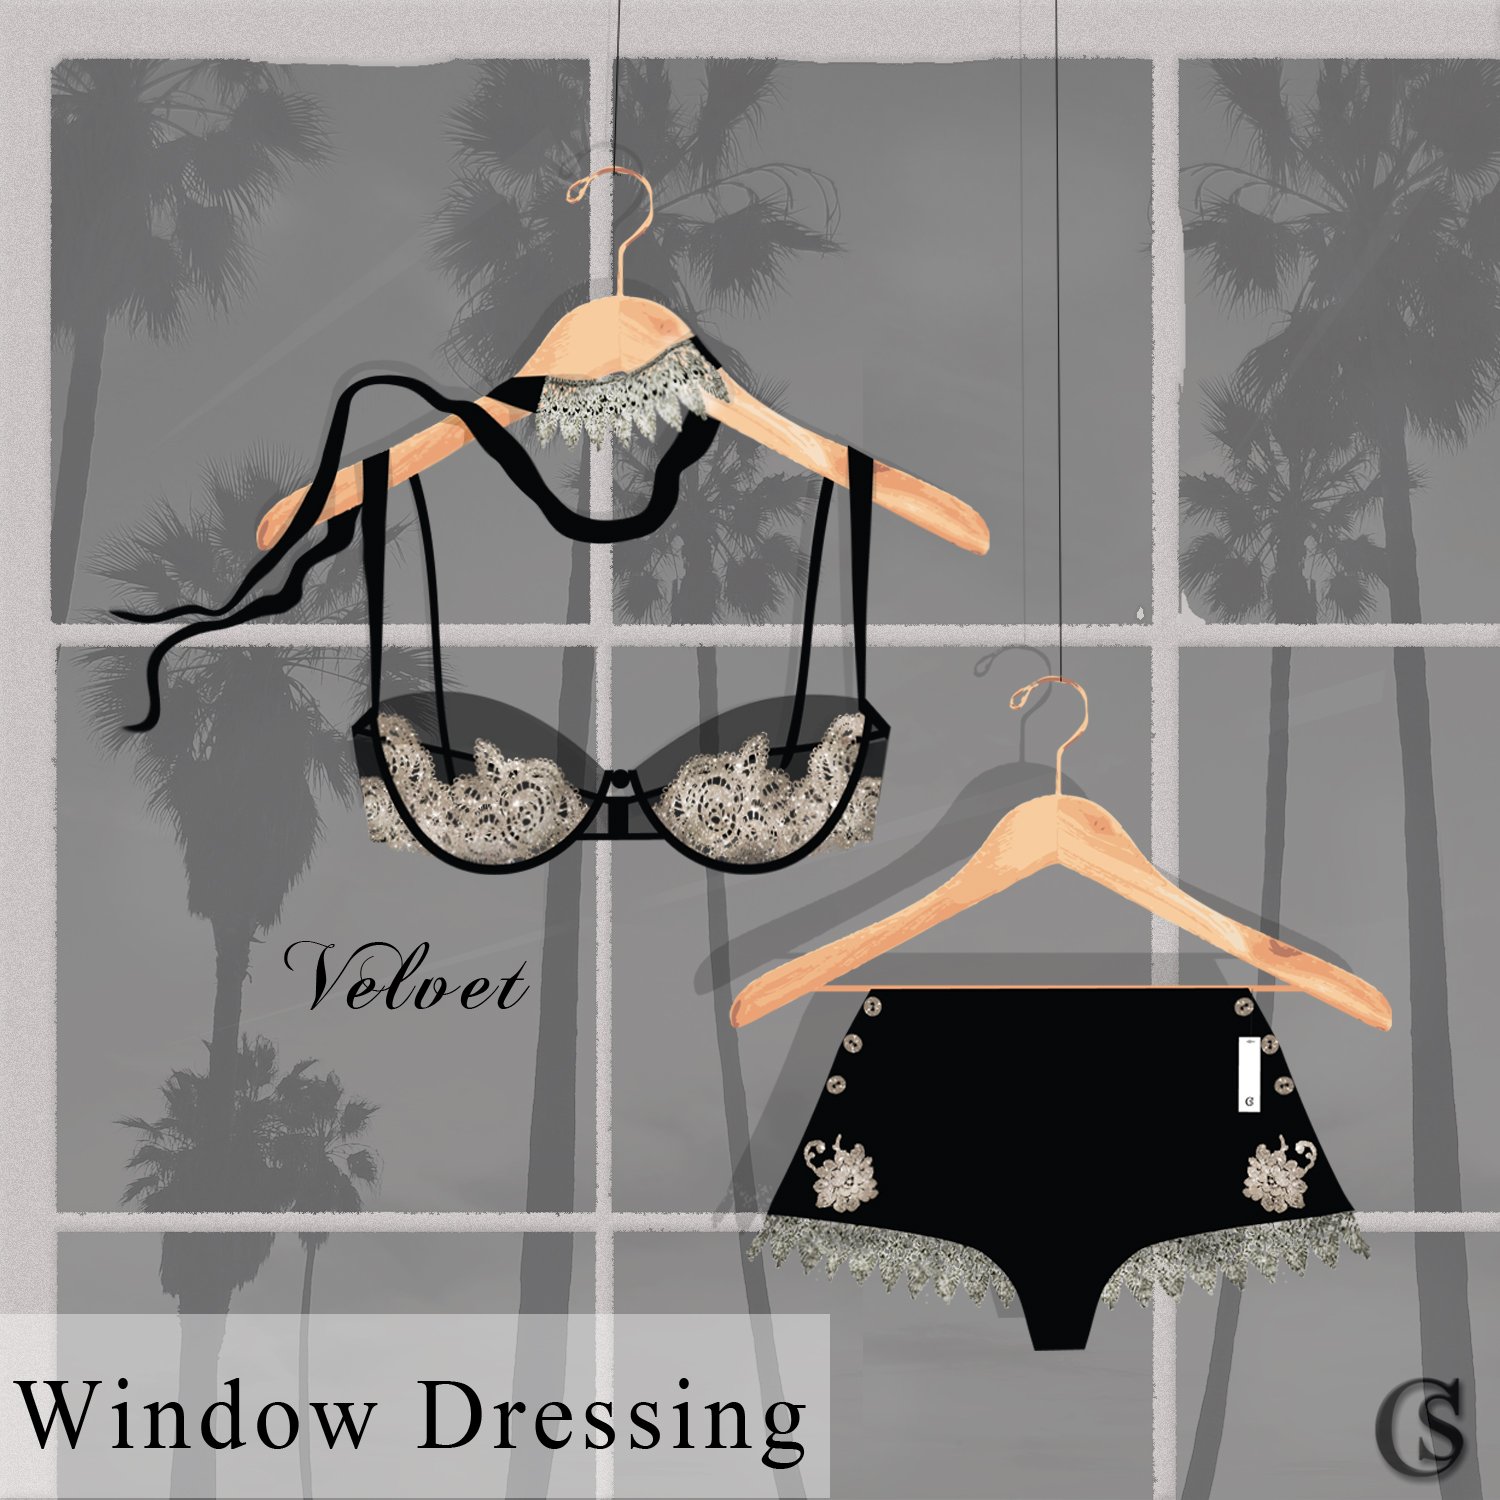 lingerie-velvet-in-the-window-2021-chiaristyle.jpg